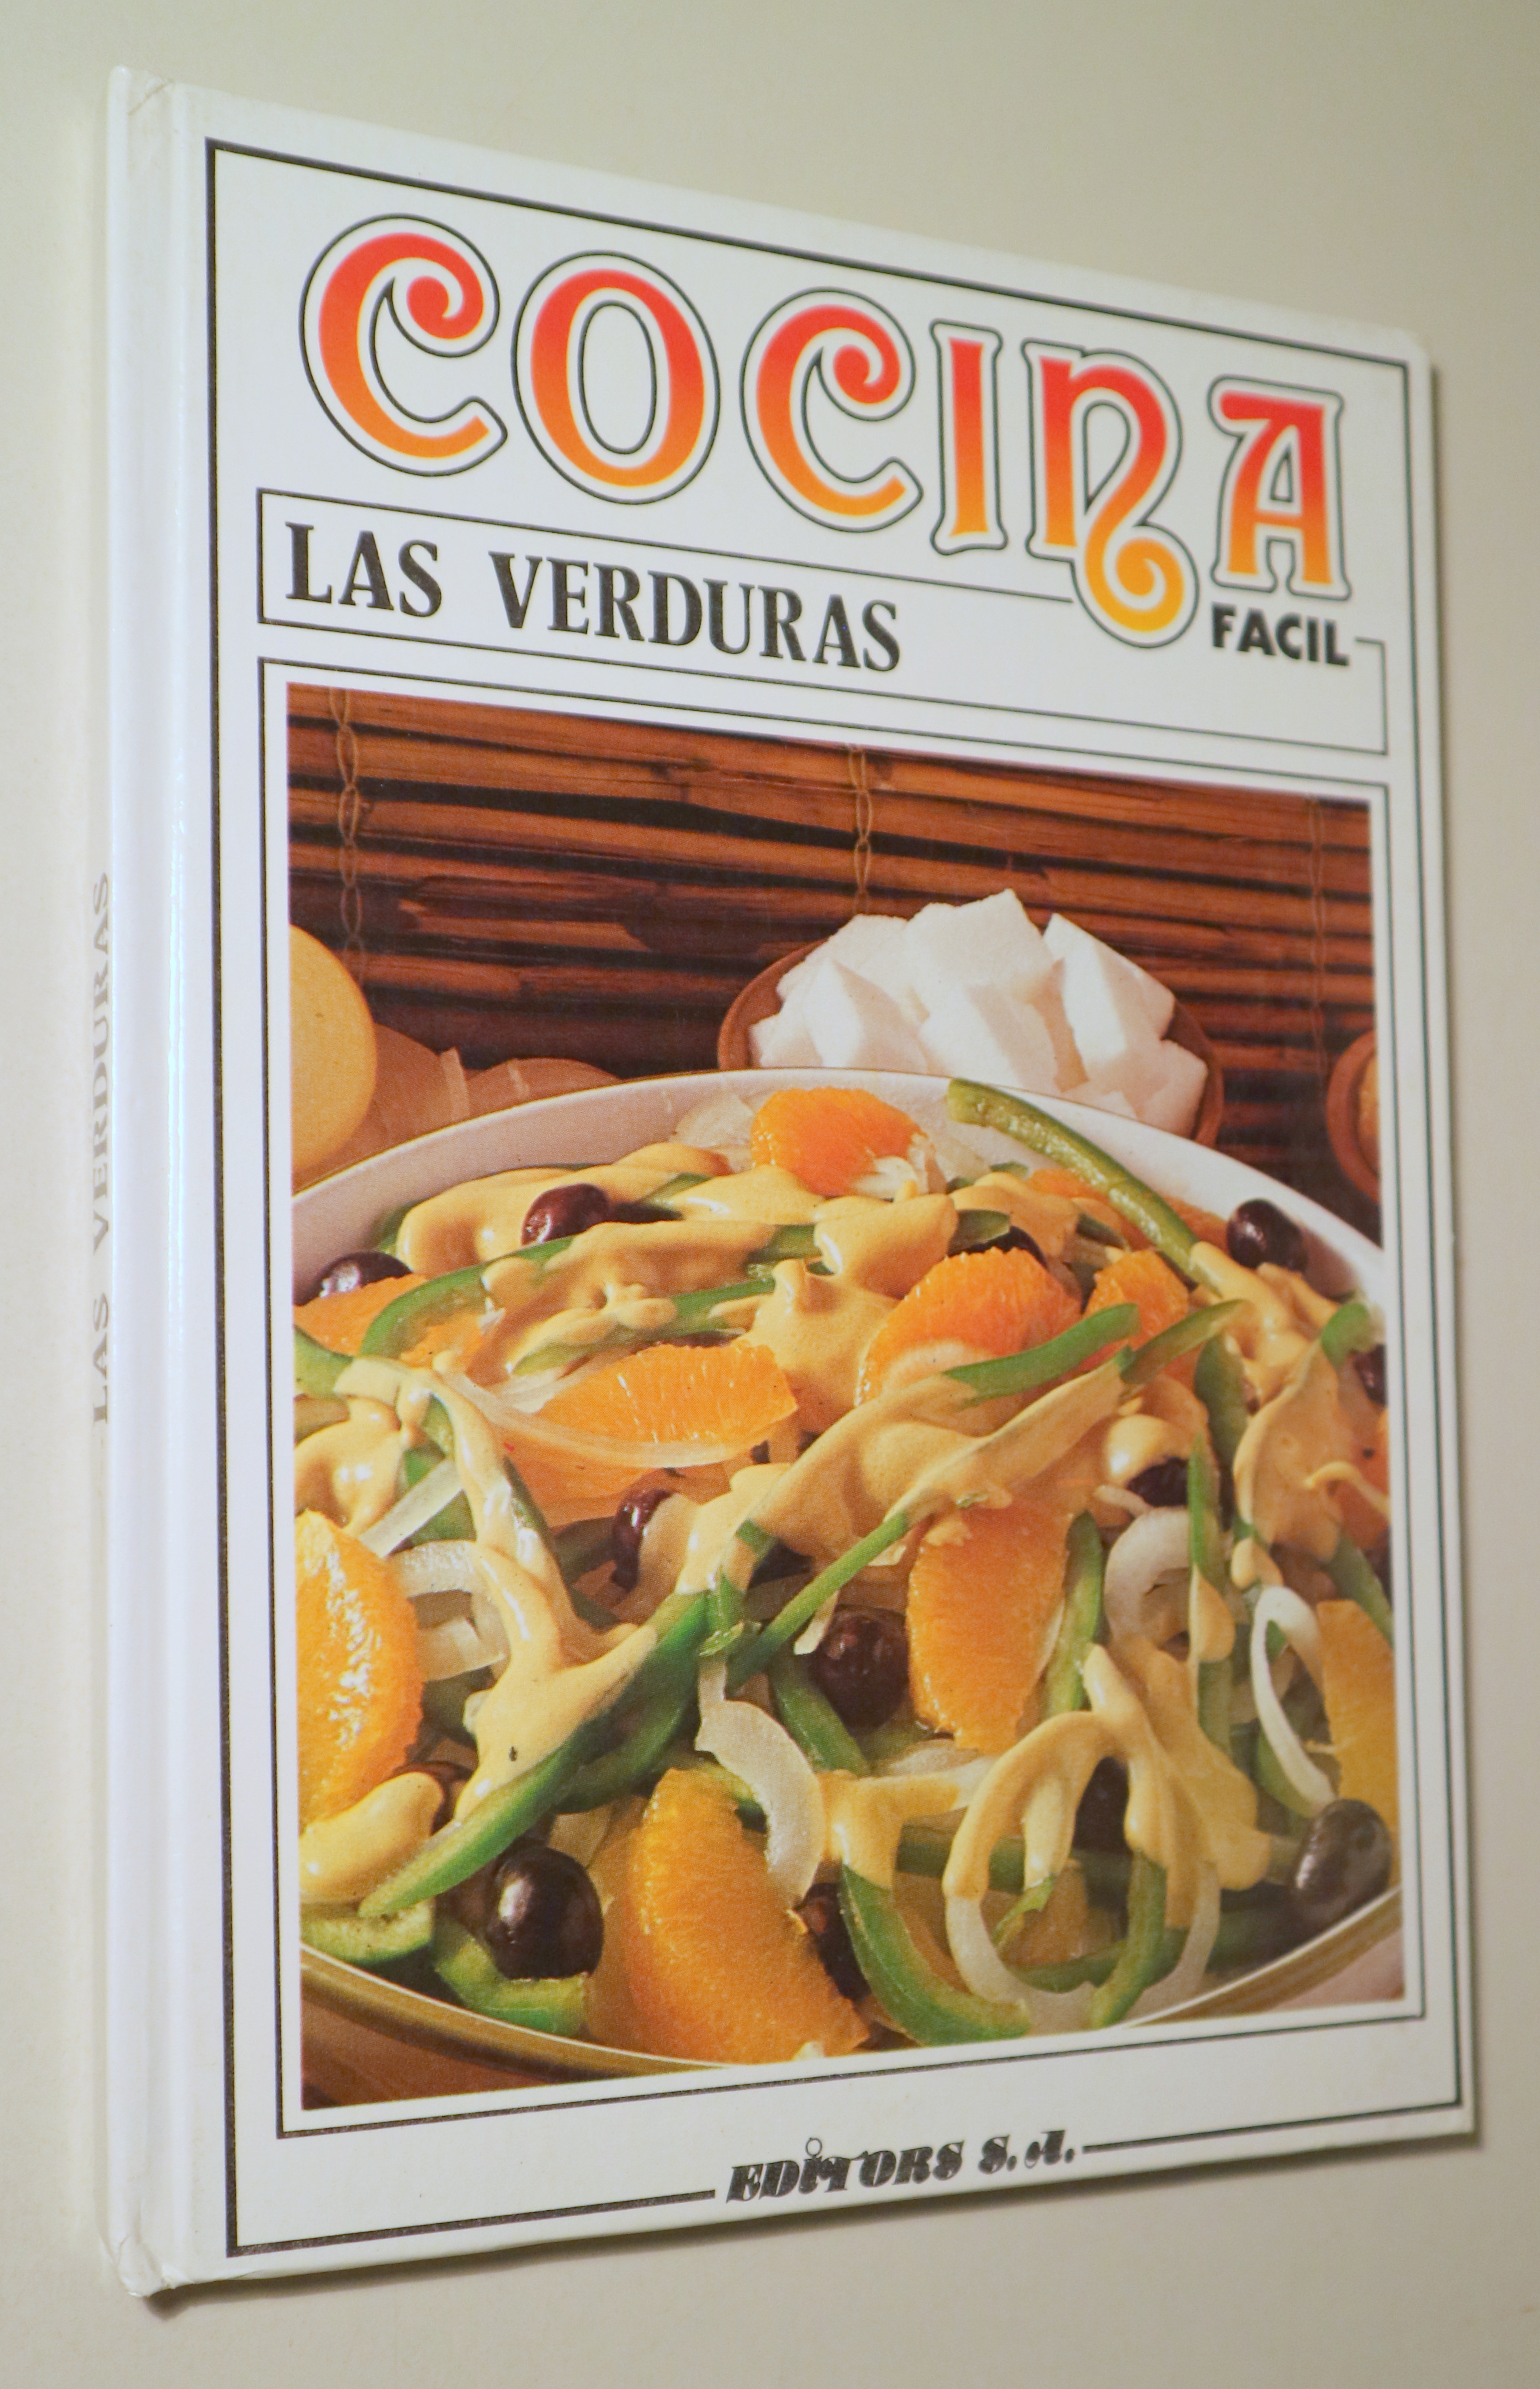 COCINA FÁCIL. Las verduras - Barcelona 1985 - Ilustrado